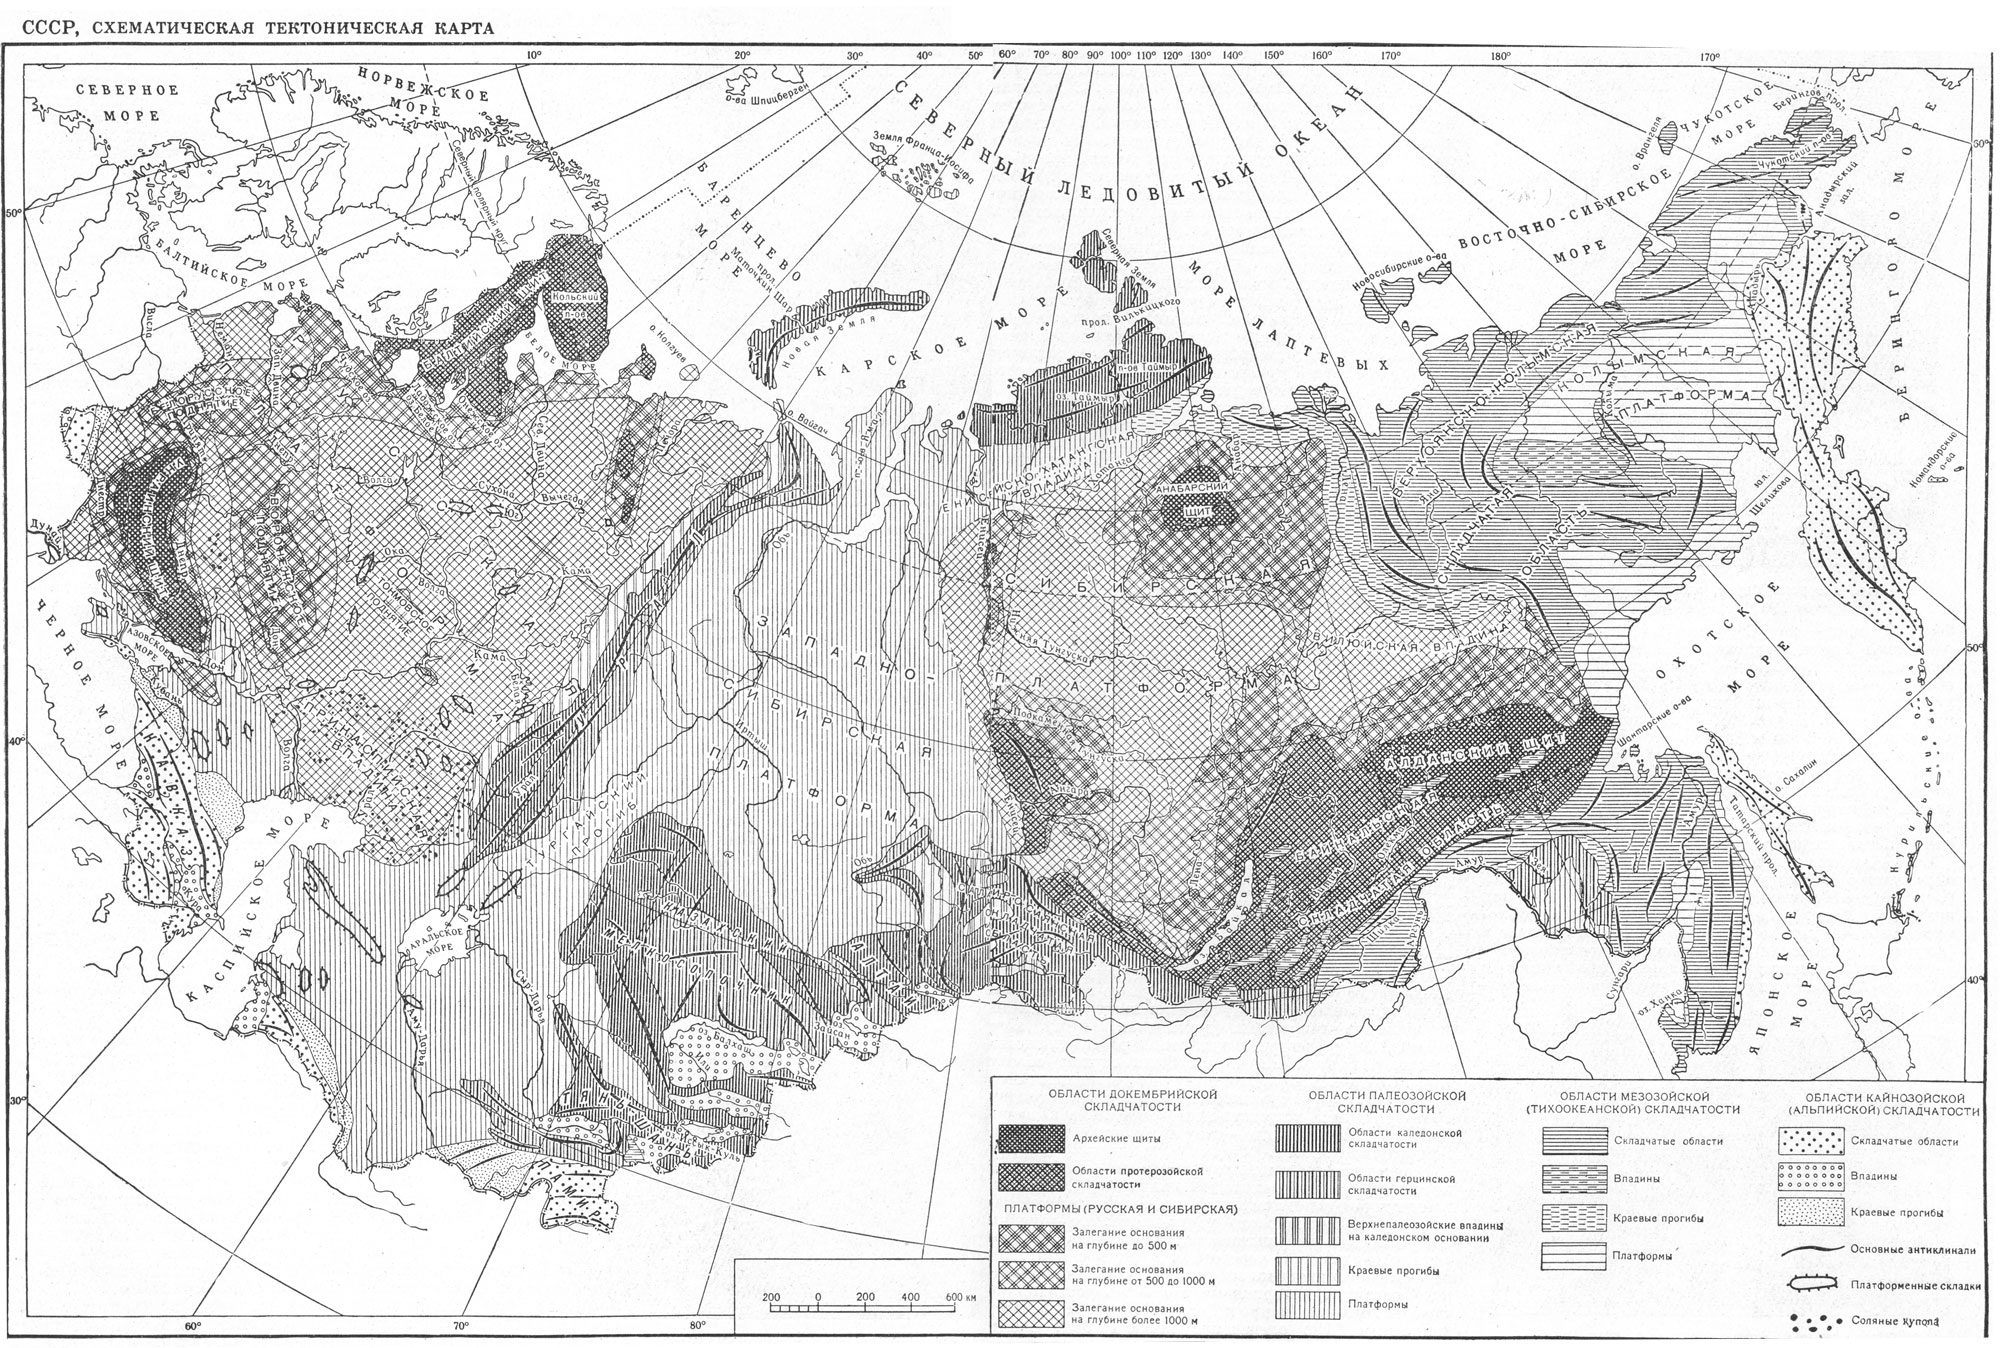 СССР, схематическая тектоническая карта.